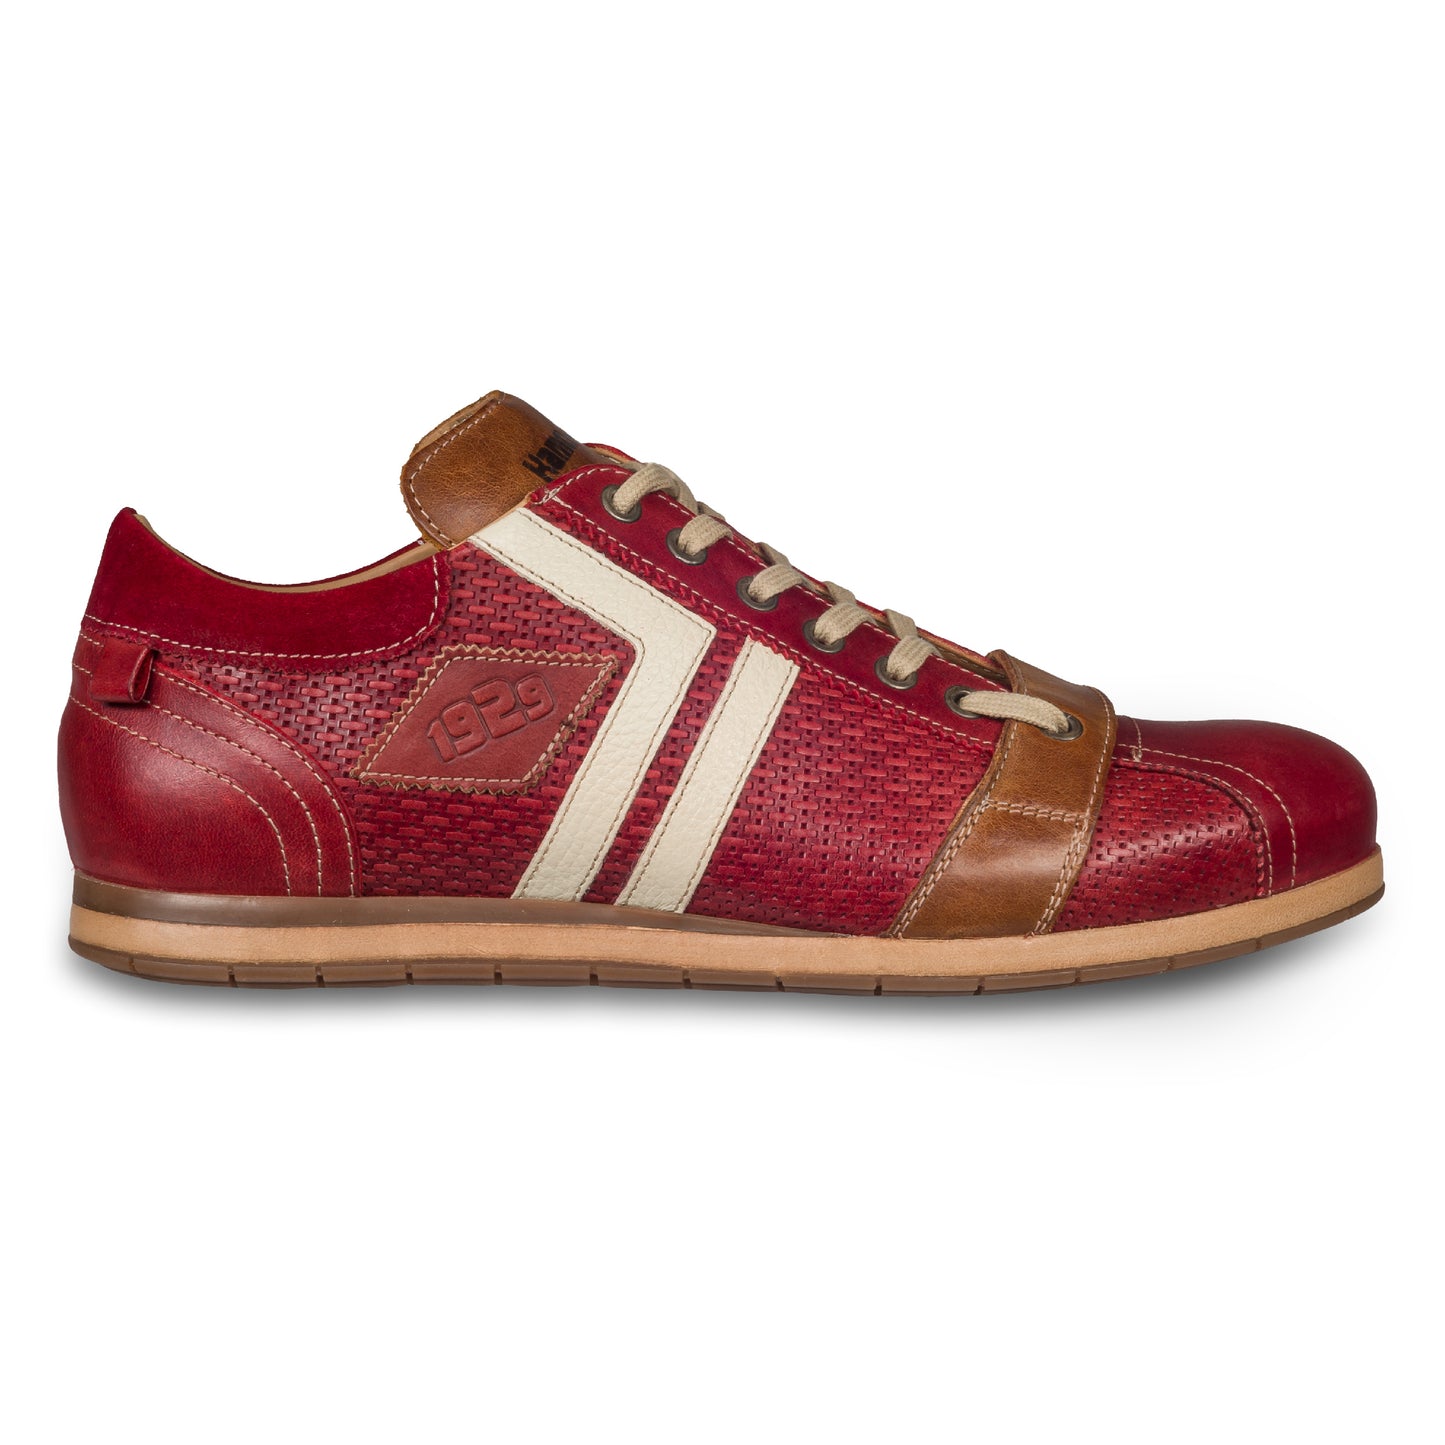 KAMO-GUTSU Italienischer Herren Leder Sneaker, rot, Retro-Optik, Modell TIFO-03 rosso. Handgefertigt. Seitliche Ansicht der Außenseite rechter Schuh.